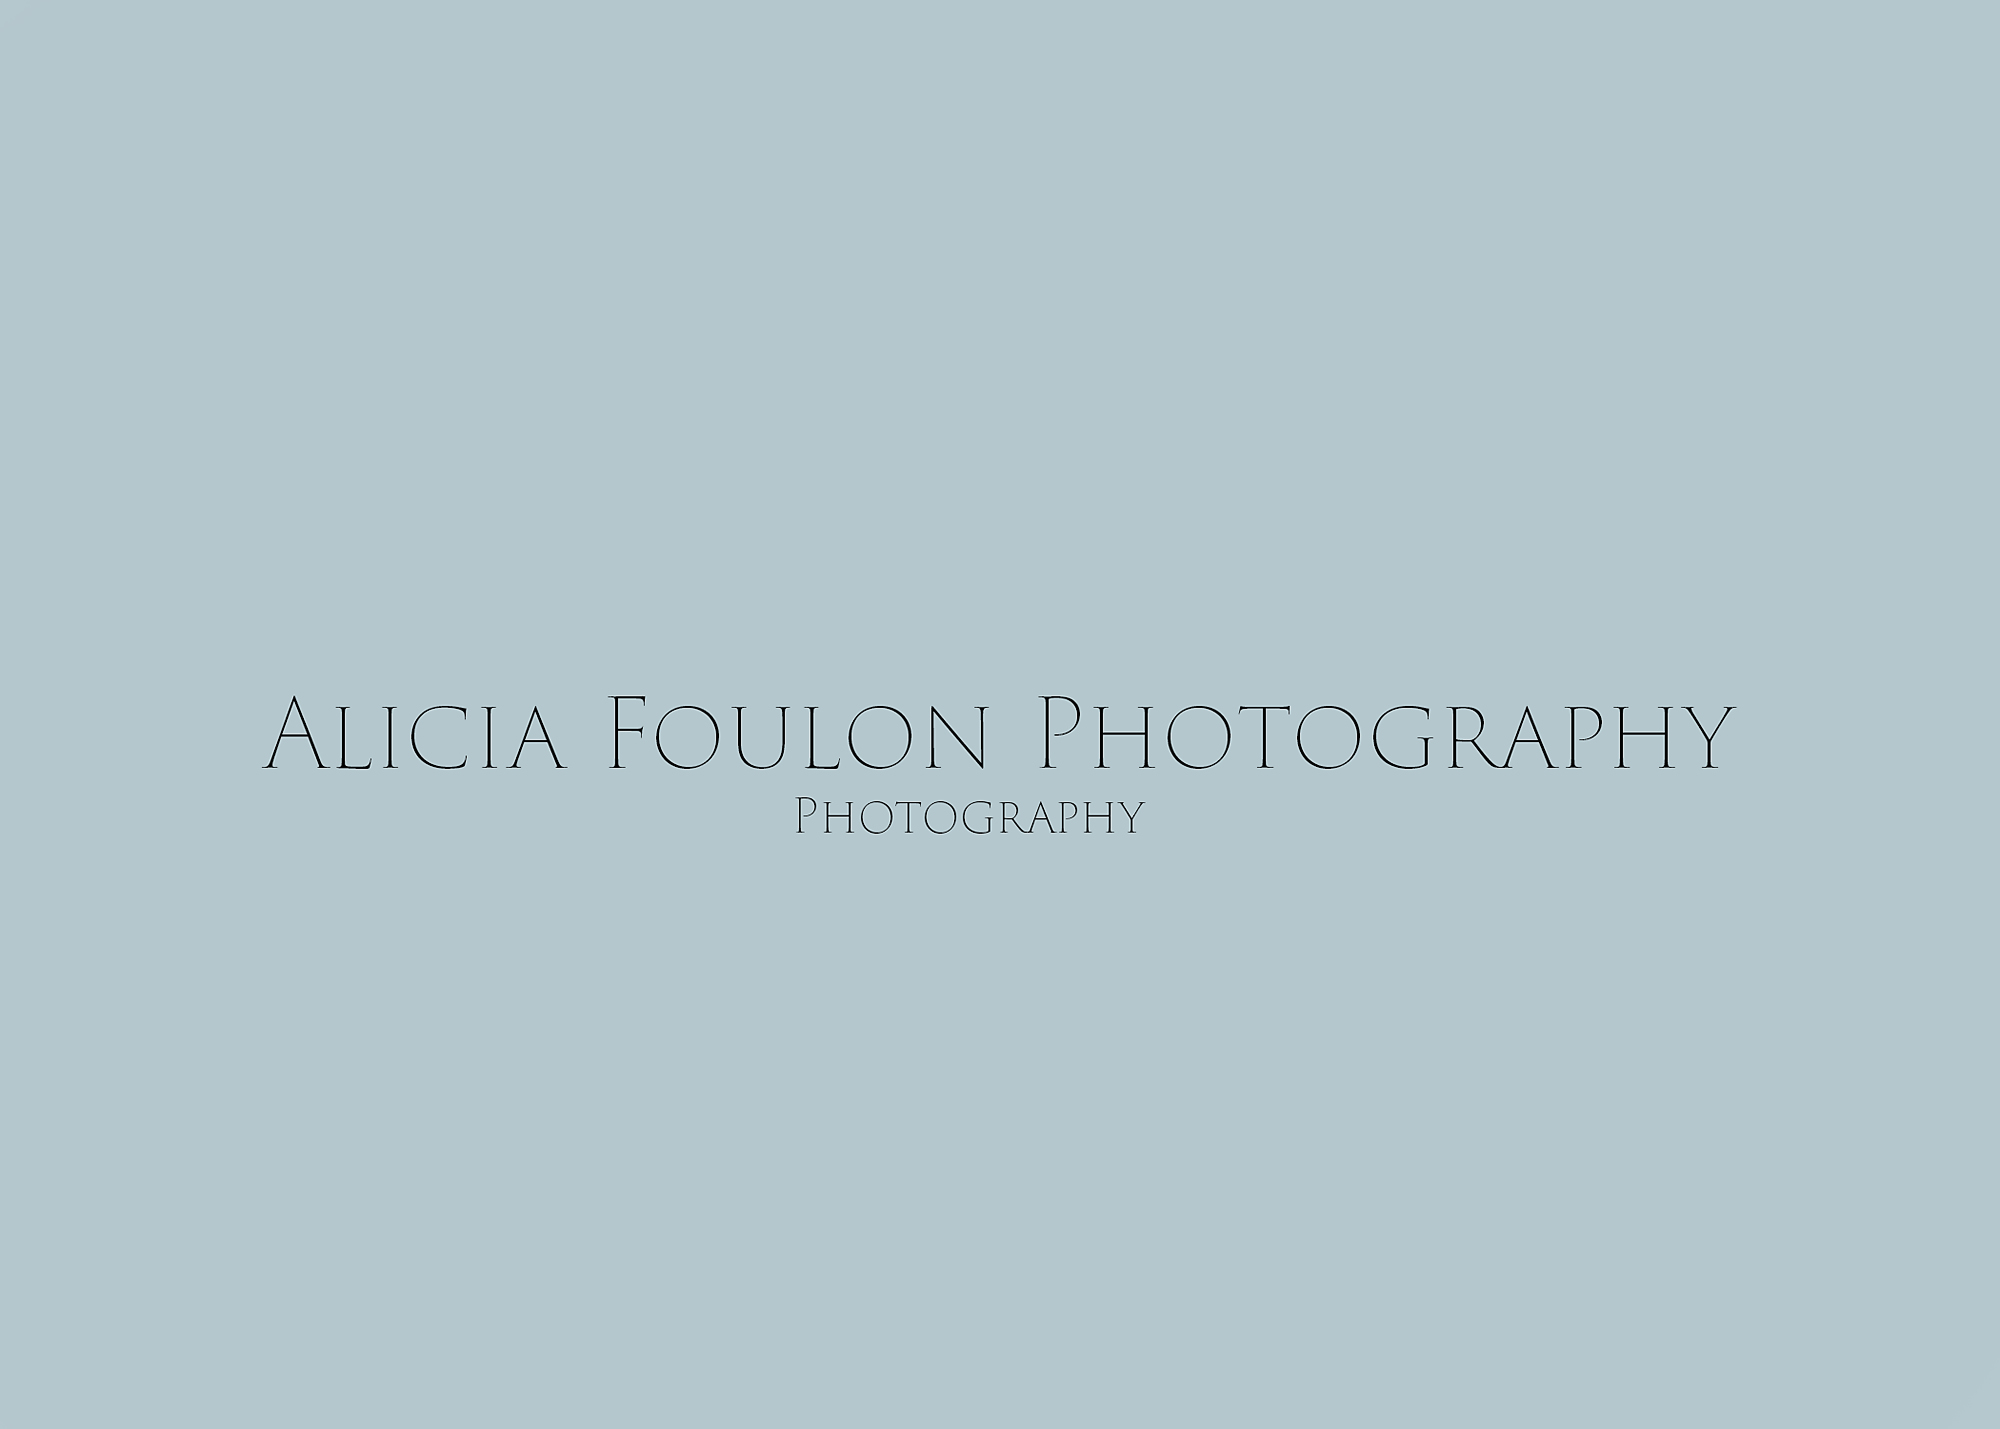 Alicia Foulon Photography